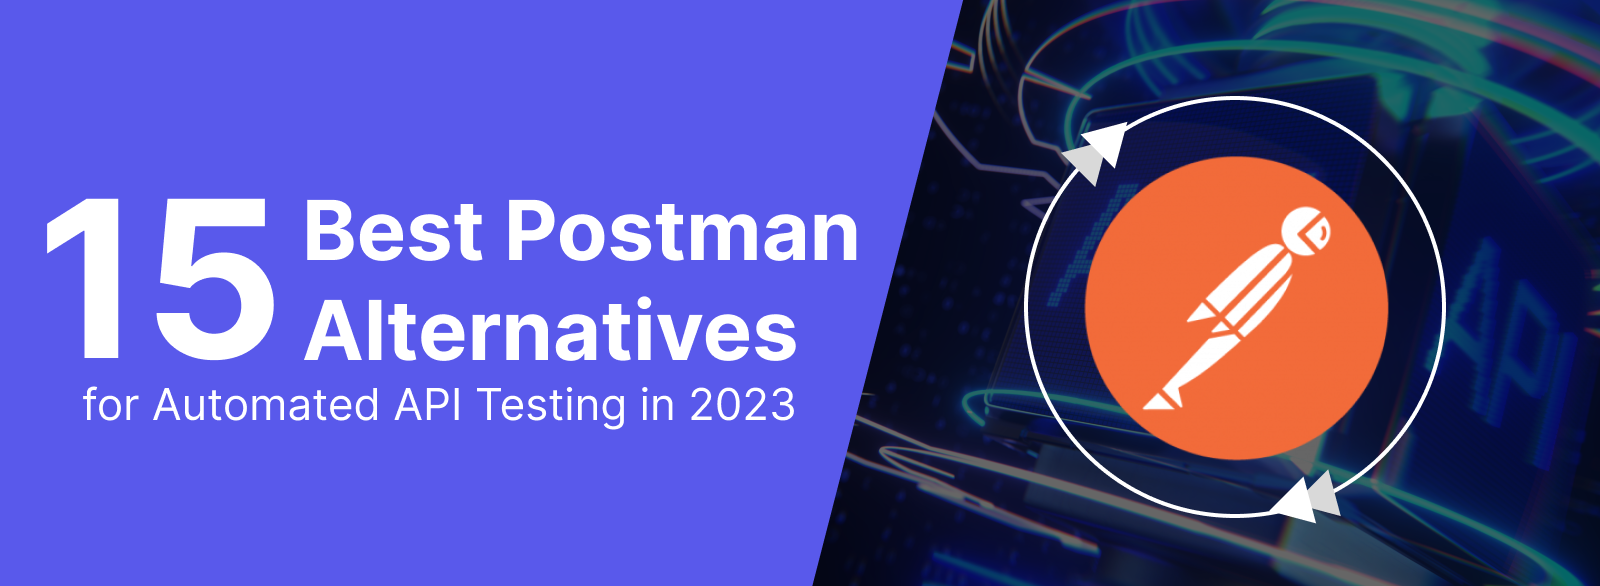 15 Best Postman Alternatives For API Testing in 2023